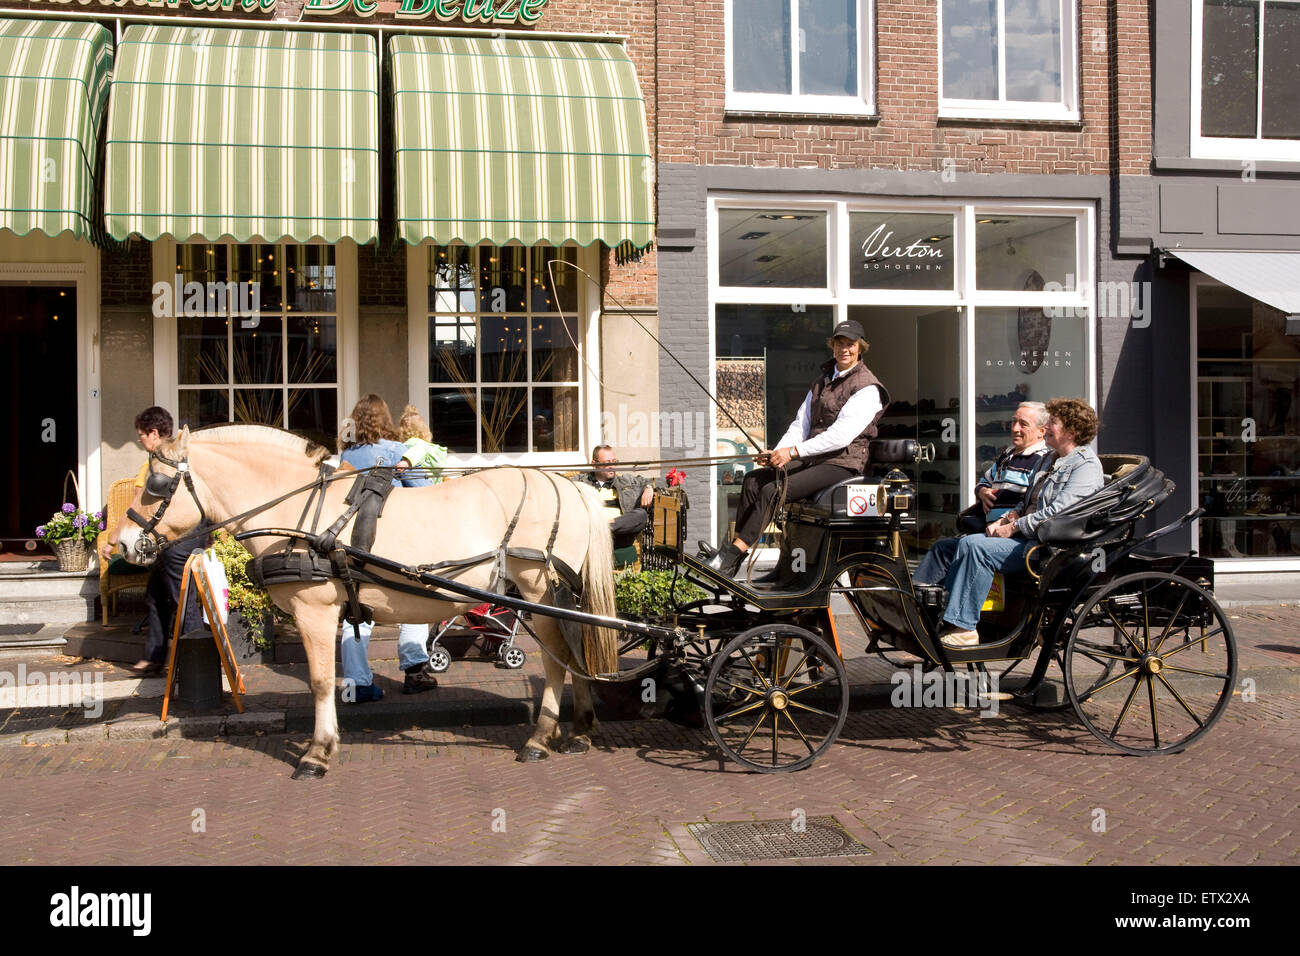 Europa, Niederlande, Zeeland, Zierikzee auf der Halbinsel Schouwen-Duiveland, eine Kutschfahrt durch den alten Teil der Stadt, s Stockfoto